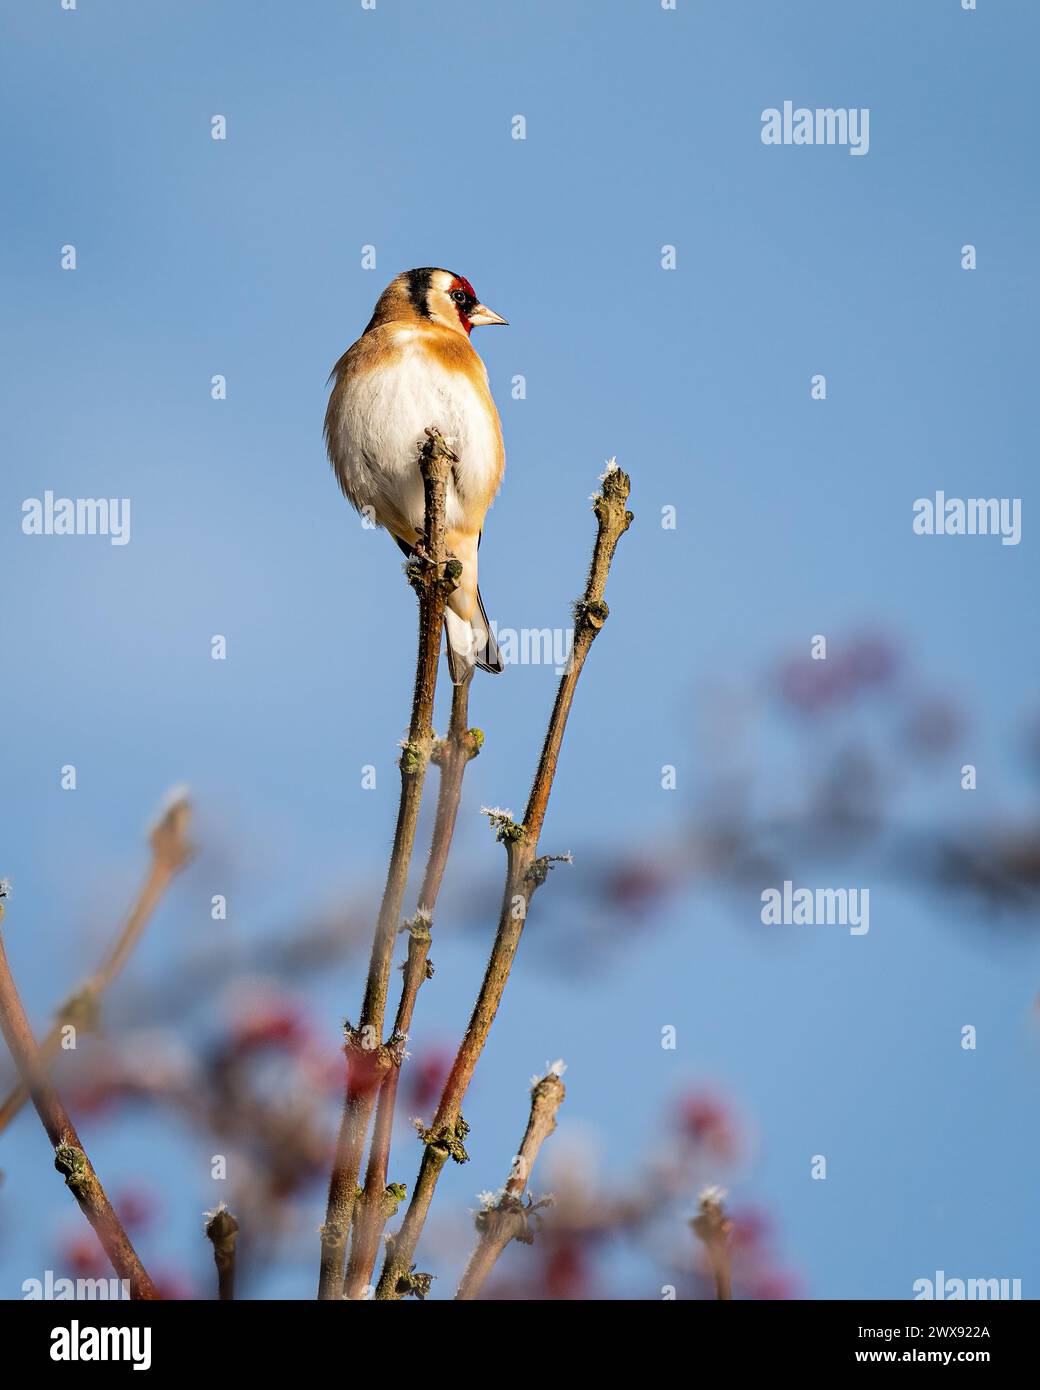 Ein Goldfink (Carduelis carduelis), der auf einem Ast vor einem blauen Himmel sitzt. Stockfoto